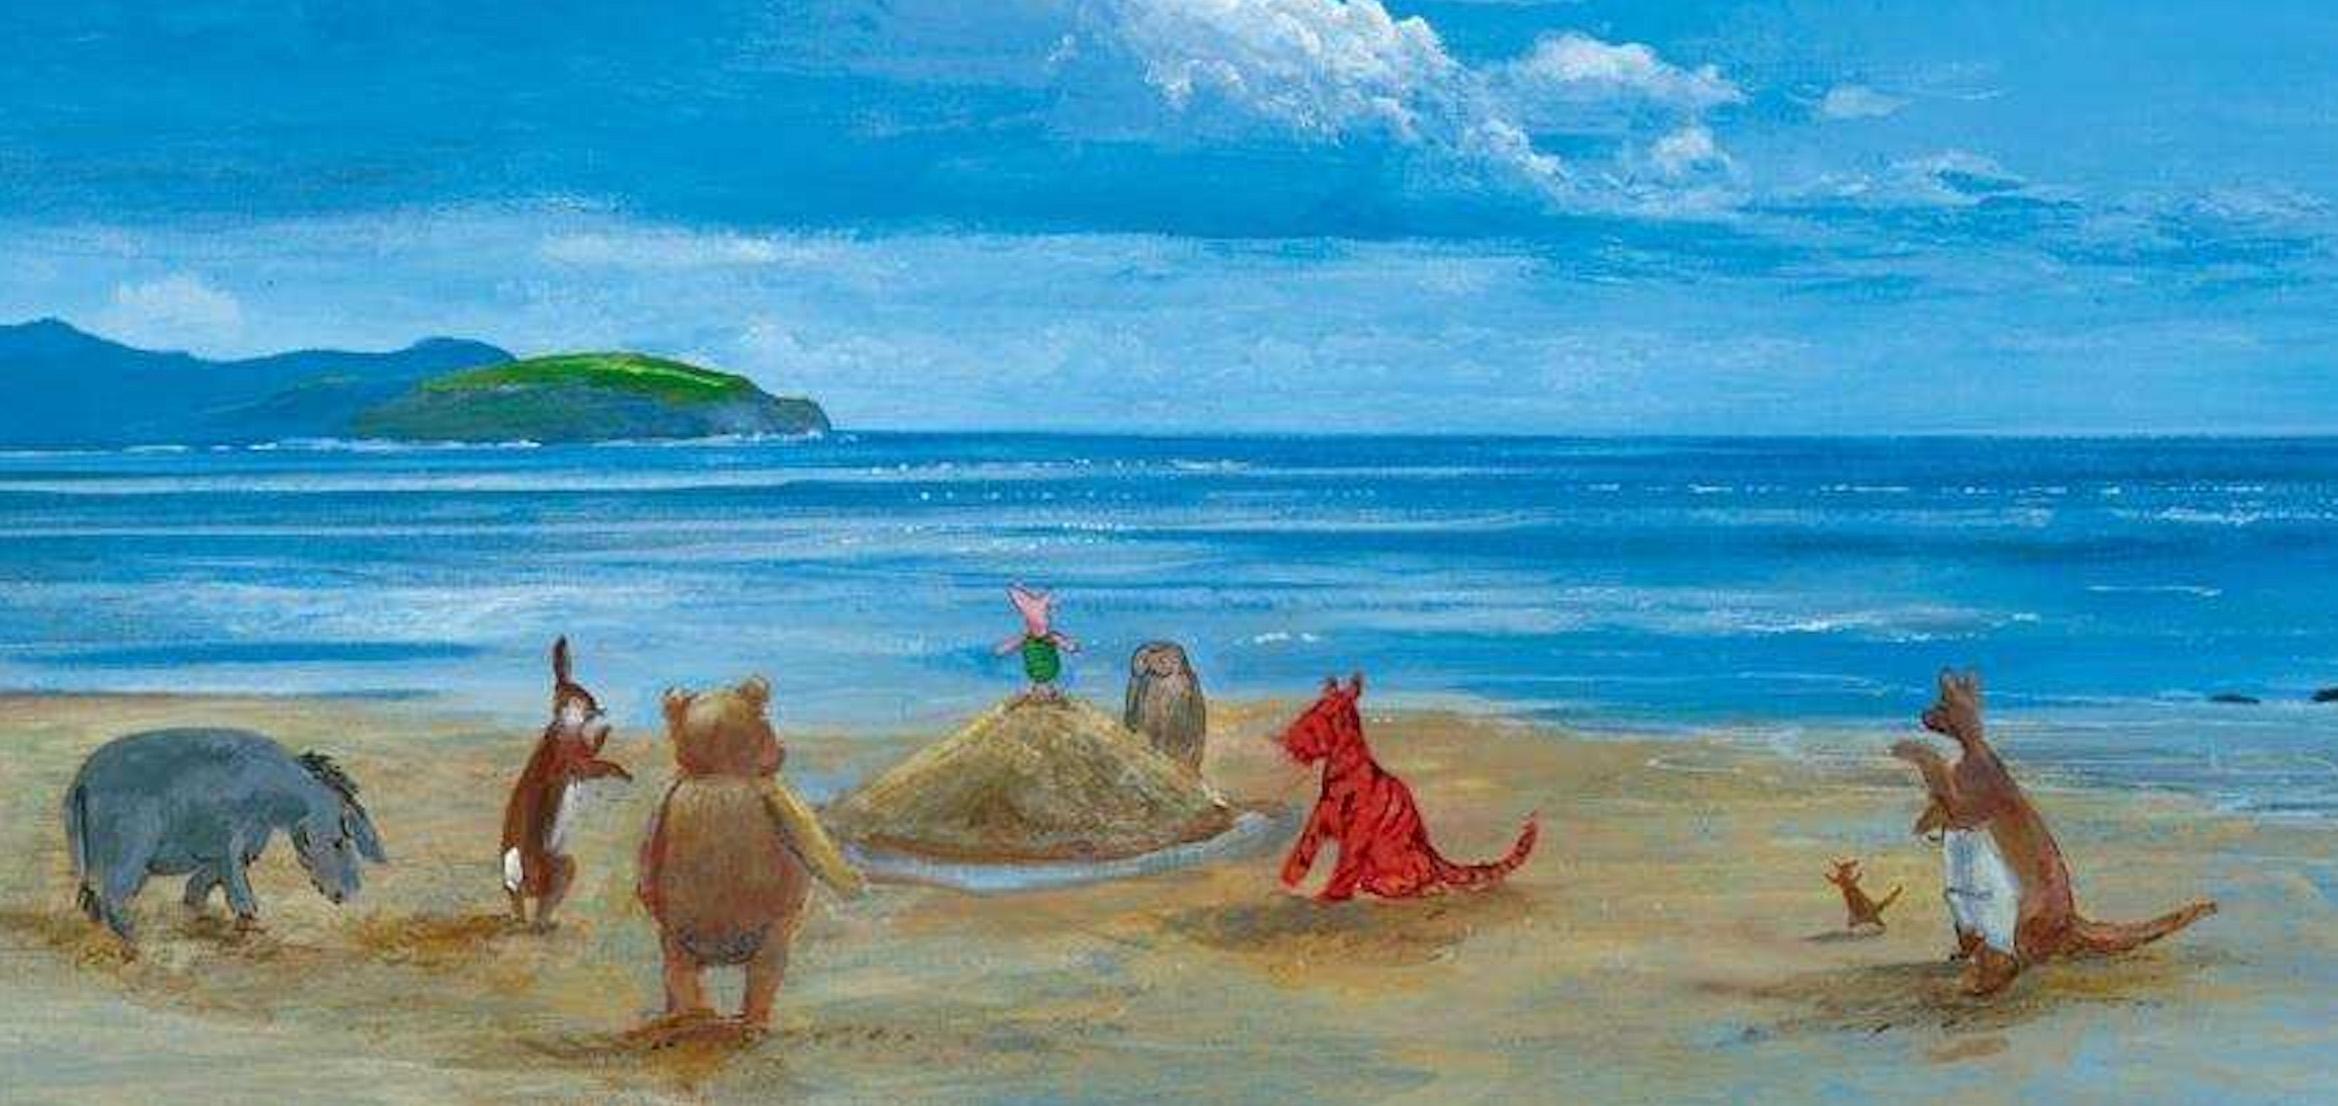 Édition limitée de Disney : Pooh And Friends At The Seaside - Art de Peter Ellenshaw